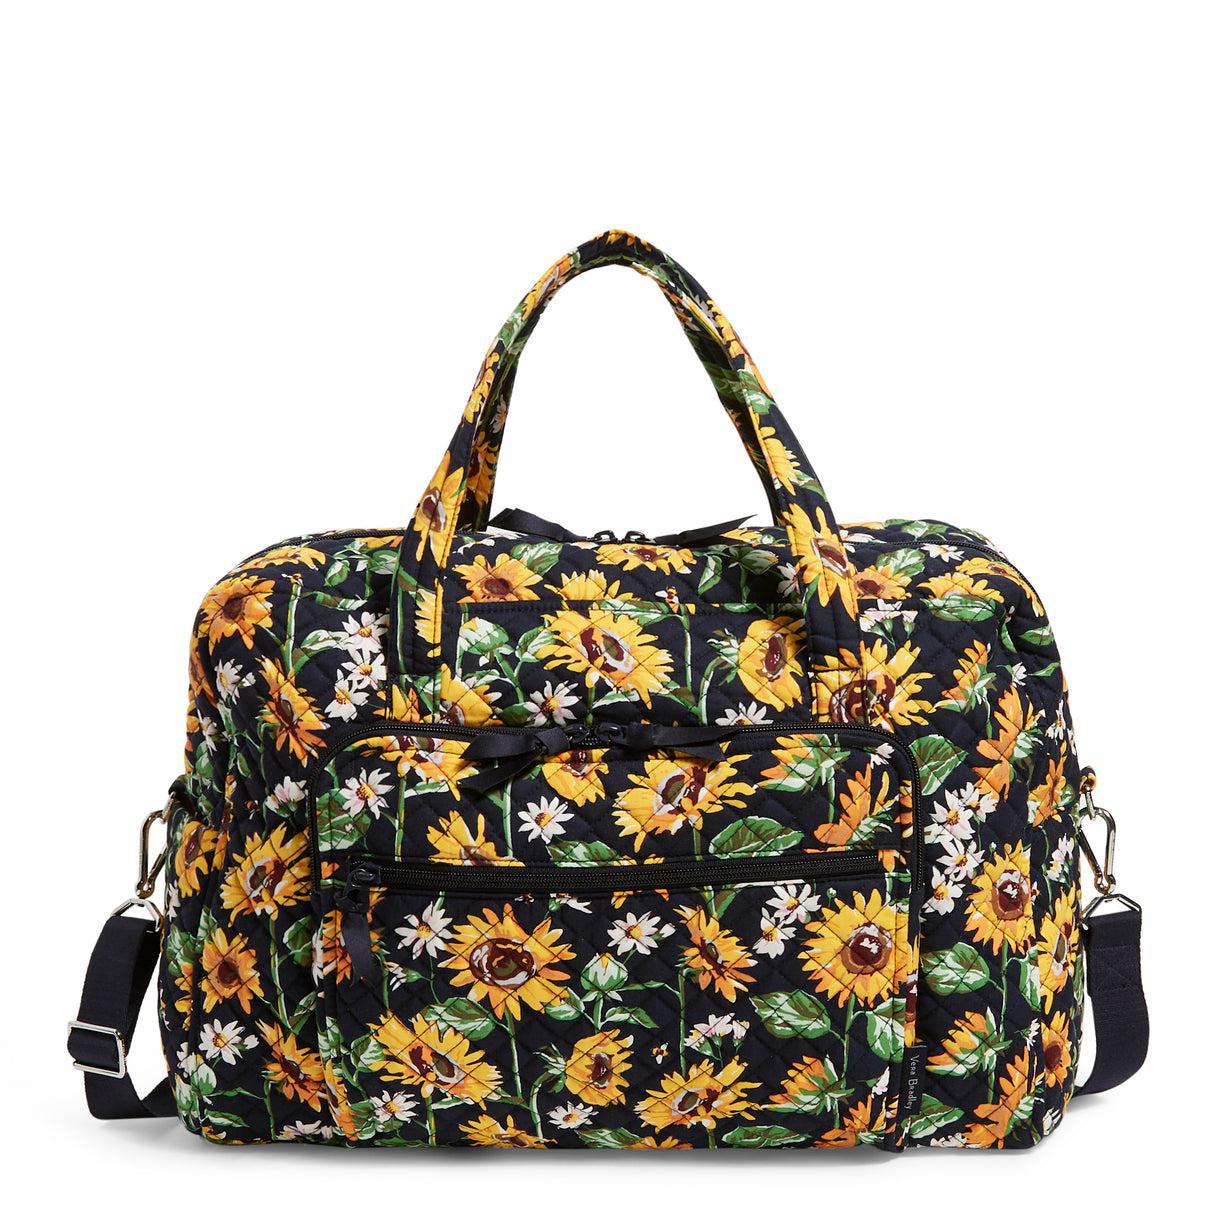 Weekender Travel Bag In Sunflowers